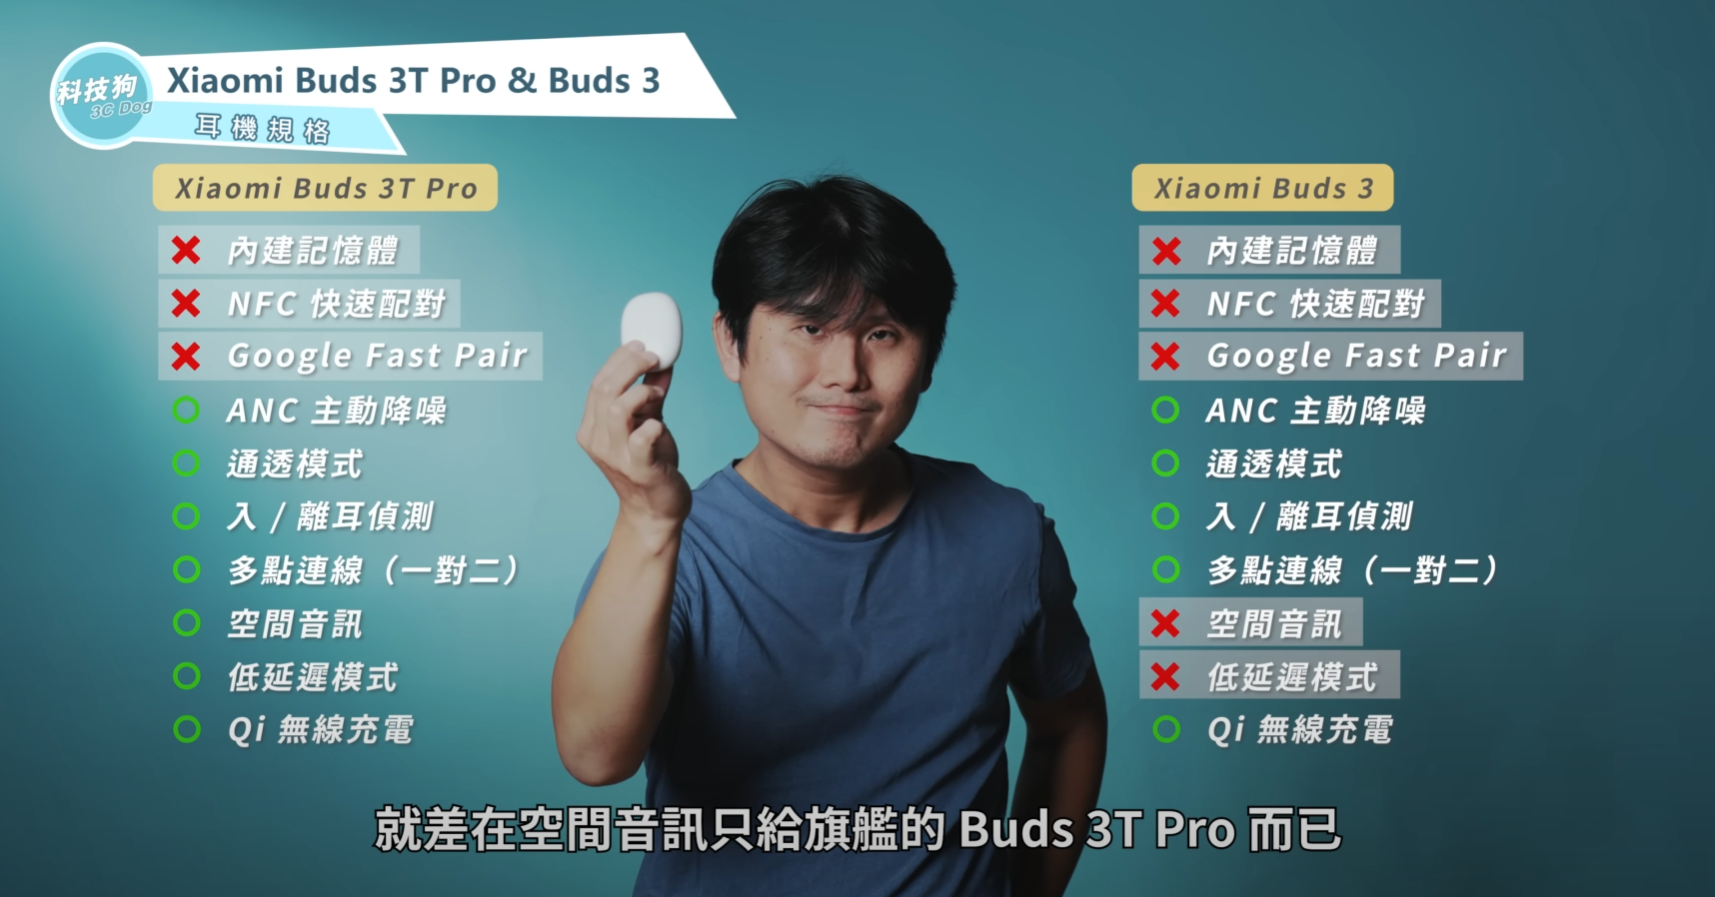 小米耳機差在哪？Xiaomi Buds 3T Pro & Xiaomi Buds 3 深度比較｜Mi 真無線藍牙耳機、ANC 主動降噪、Qi 無線充電、IP55 防水防塵、ptt｜科技狗 - PTT, Xiaomi Buds 3 ptt, Xiaomi Buds 3 優點, Xiaomi Buds 3 缺點, Xiaomi Buds 3 評價, Xiaomi Buds 3 評測, Xiaomi Buds 3 開箱, Xiaomi Buds 3T Pro ptt, Xiaomi Buds 3T Pro 優點, Xiaomi Buds 3T Pro 缺點, Xiaomi Buds 3T Pro 評價, Xiaomi Buds 3T Pro 評測, Xiaomi Buds 3T Pro 開箱, 小米, 小米 Buds 3 ptt, 小米 Buds 3 優點, 小米 Buds 3 缺點, 小米 Buds 3 評價, 小米 Buds 3 評測, 小米 Buds 3 開箱, 小米 Buds 3T Pro ptt, 小米 Buds 3T Pro 優點, 小米 Buds 3T Pro 缺點, 小米 Buds 3T Pro 評價, 小米 Buds 3T Pro 評測, 小米 Buds 3T Pro 開箱, 小米耳機, 小米耳機 ptt, 真無線藍牙耳機, 科技狗, 耳機, 藍牙耳機, 評測, 開箱, 開箱評測, 體驗 - 科技狗 3C DOG